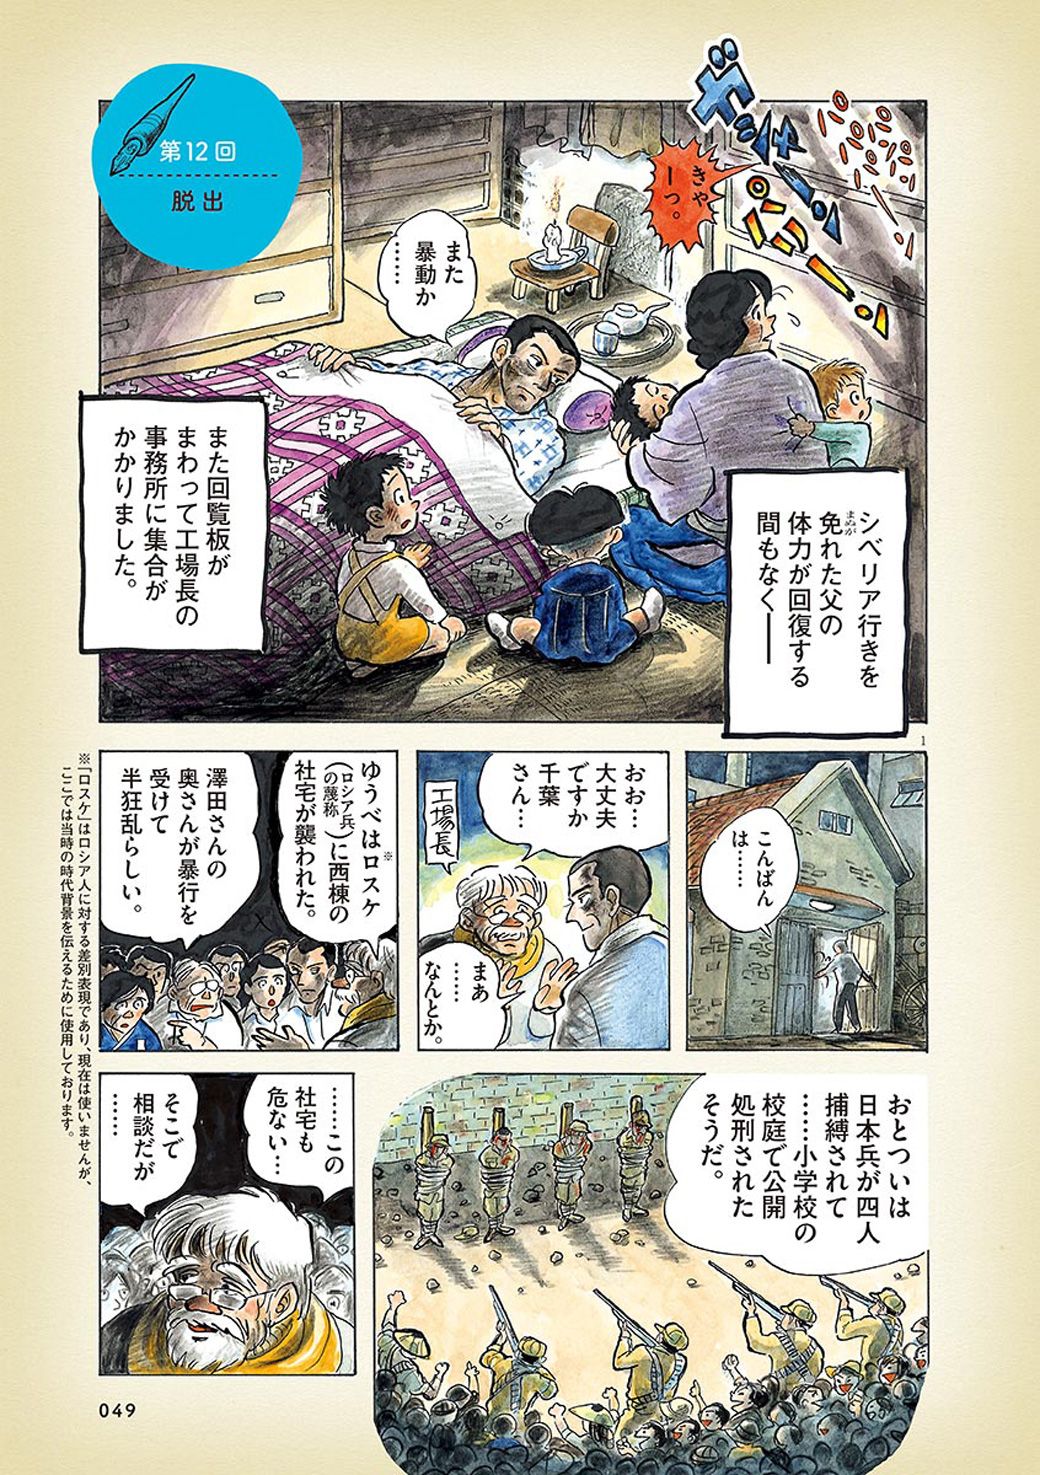 終戦を満州で迎えた日本人家族が脱出した瞬間 漫画 ひねもすのたり日記 第12回 東洋経済オンライン Goo ニュース